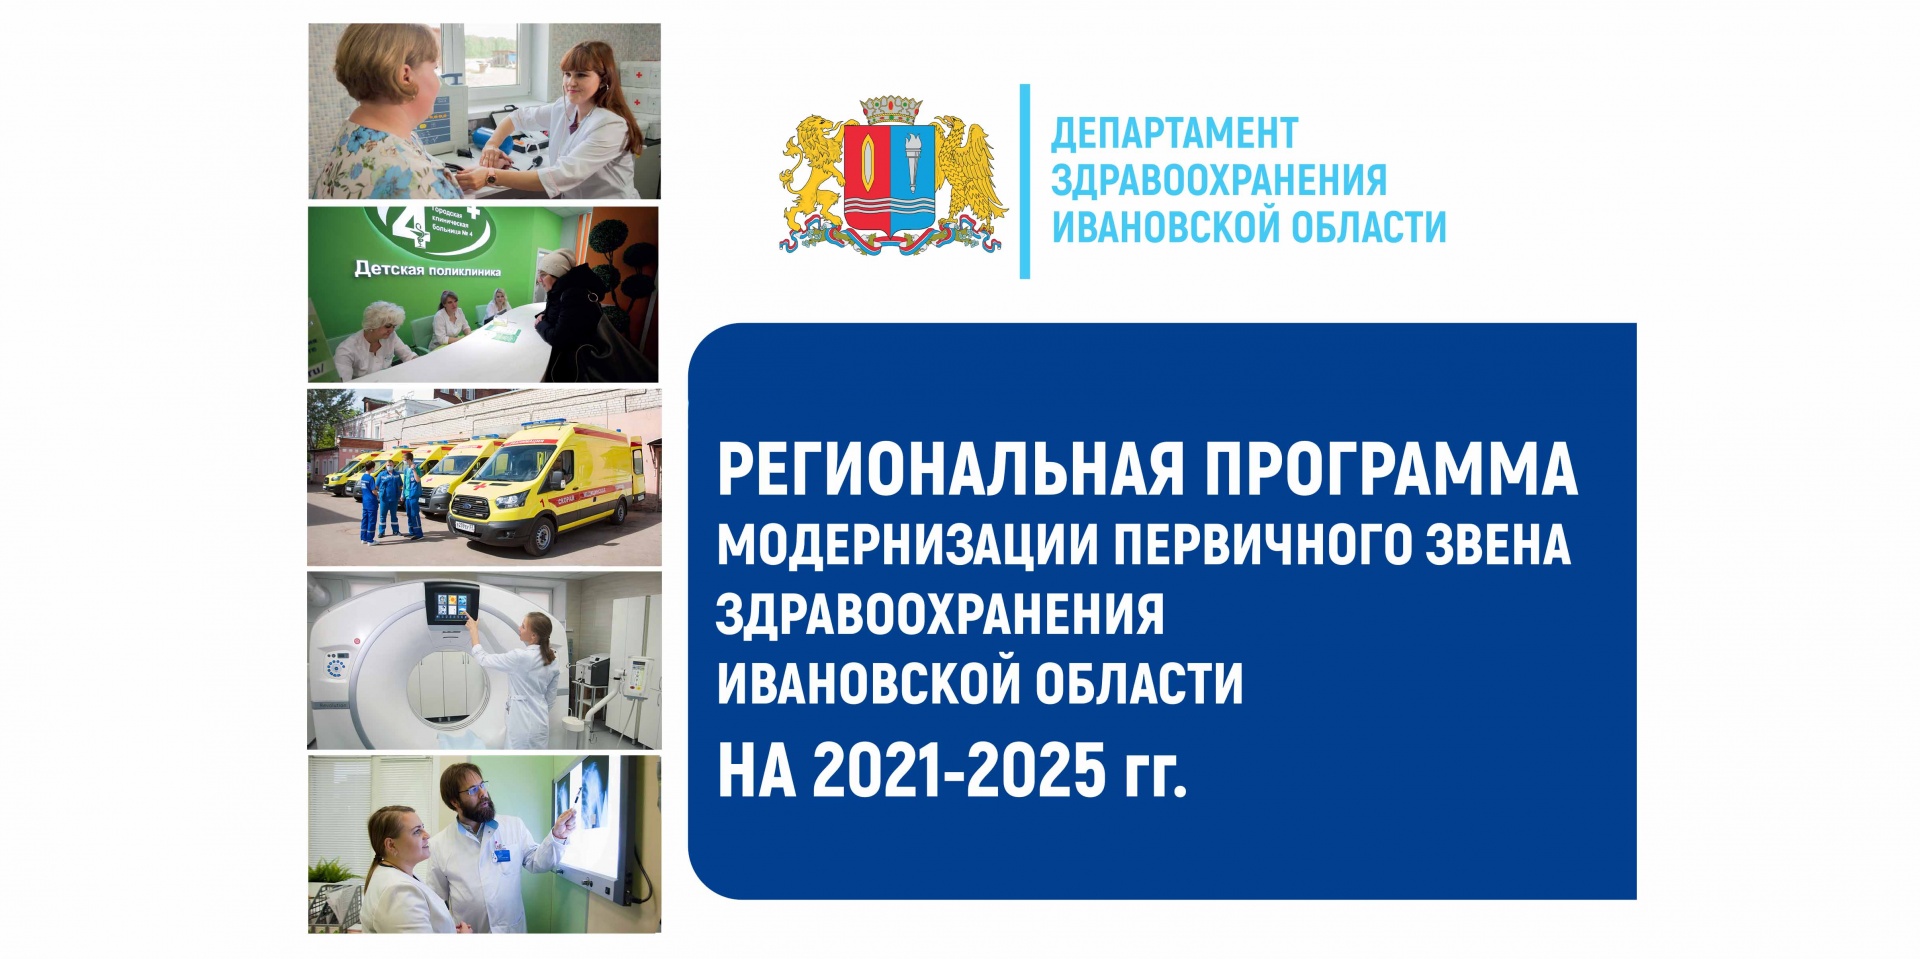 Более 120 медицинских объектов построят в Ивановской области в ближайшие 5 лет